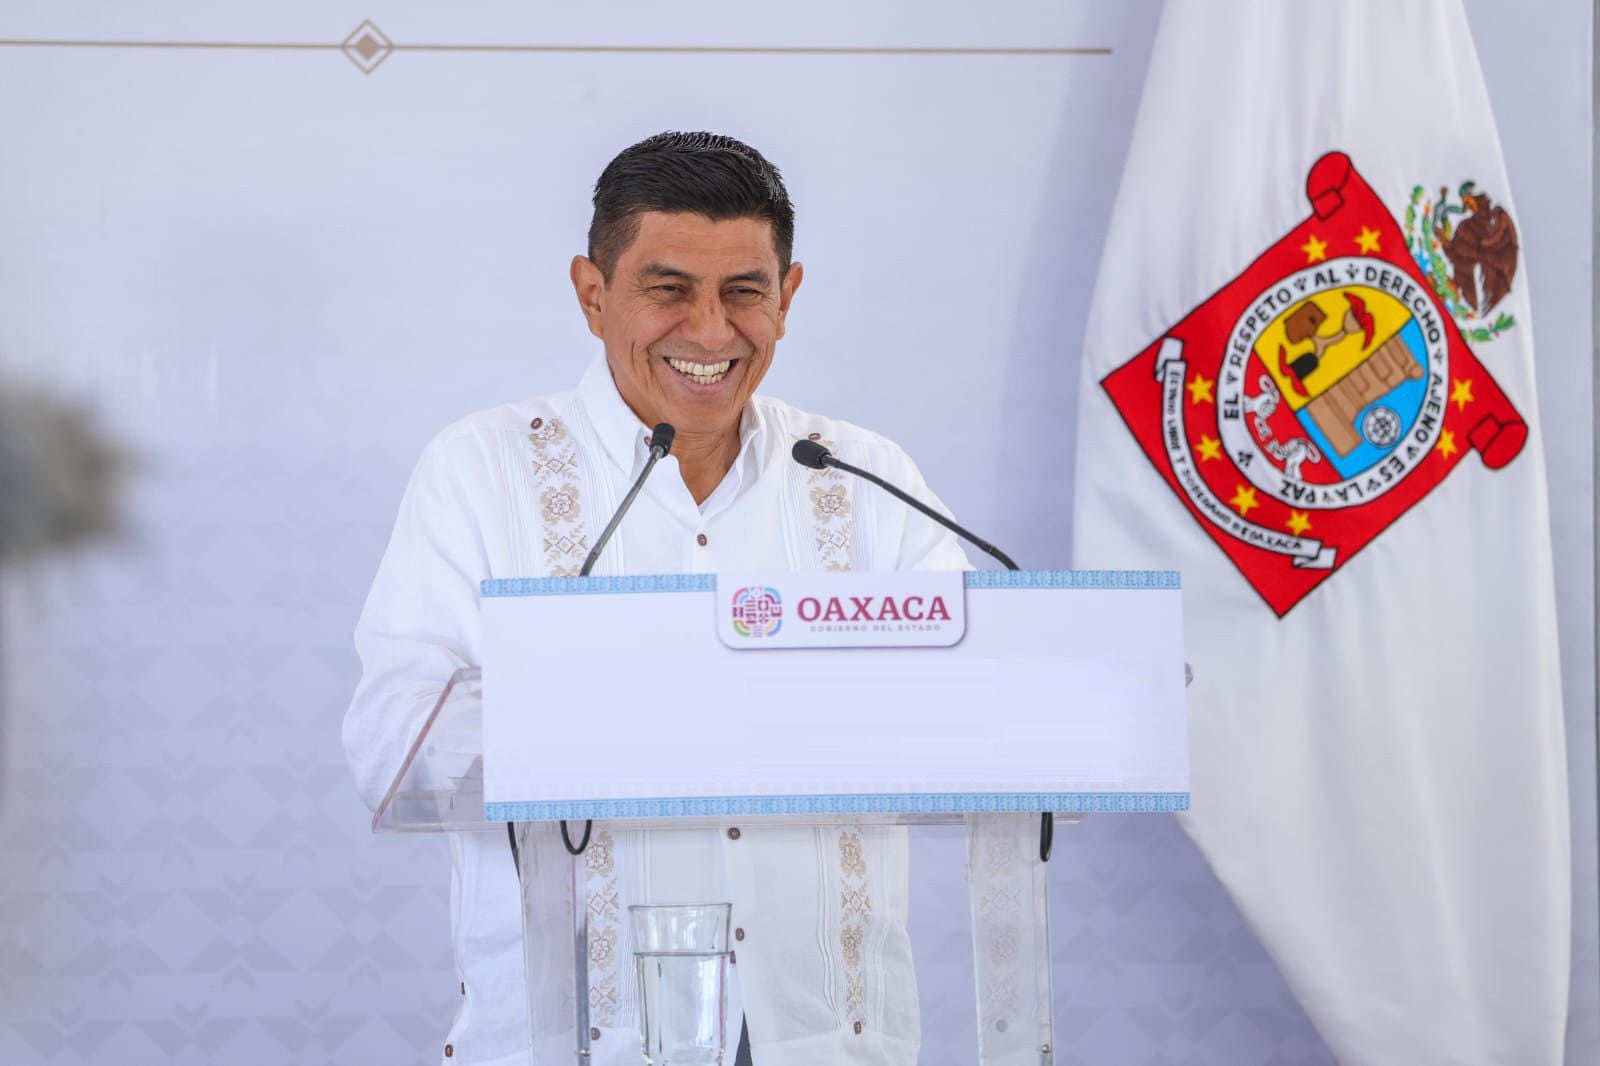 Salomón Jara apoya reformas de AMLO: ‘Opositores enfrentarán juicio del pueblo’